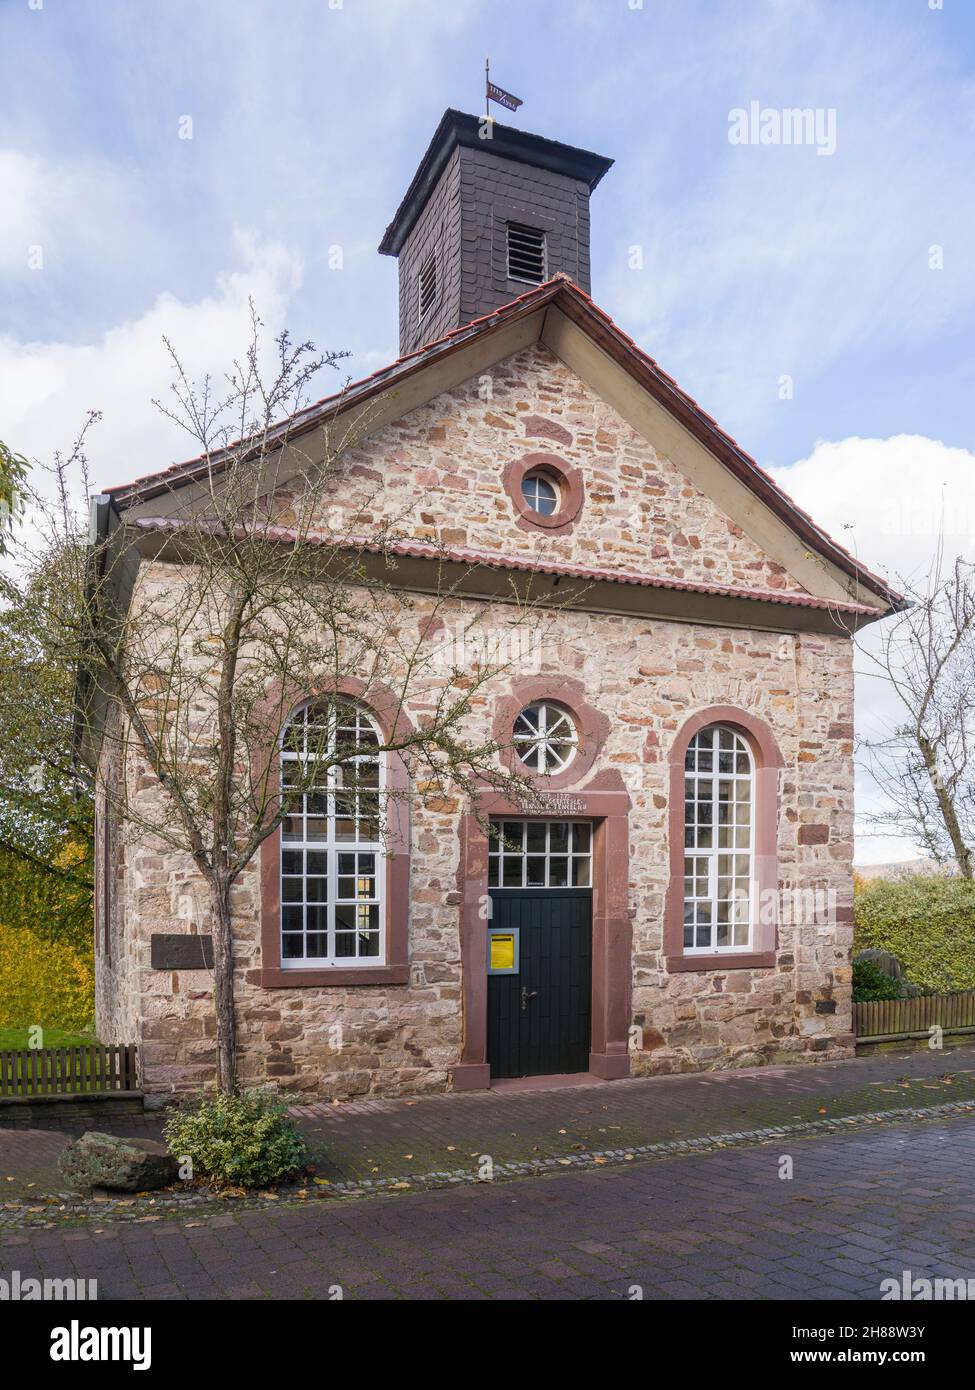 Waldensian edificio chiesa, 18 ° secolo, villaggio di Gewissensenruh, Wesertal, Weserbergland, Assia, Germania Foto Stock